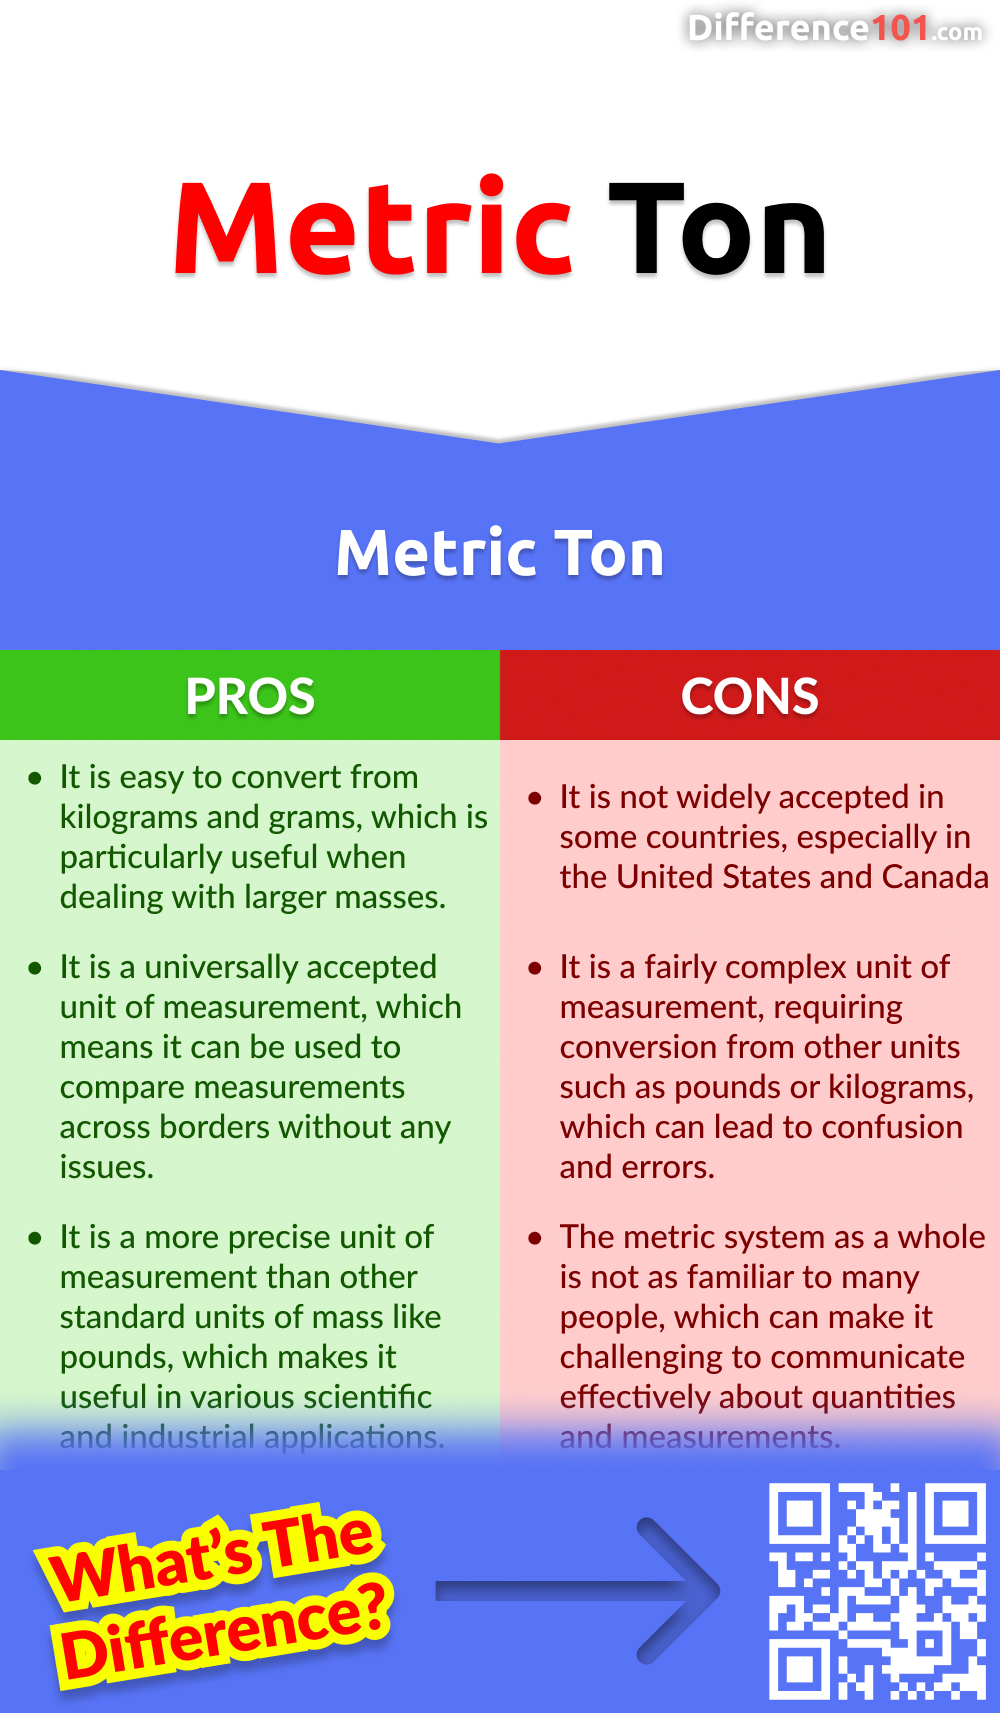 Metric Ton Pros & Cons